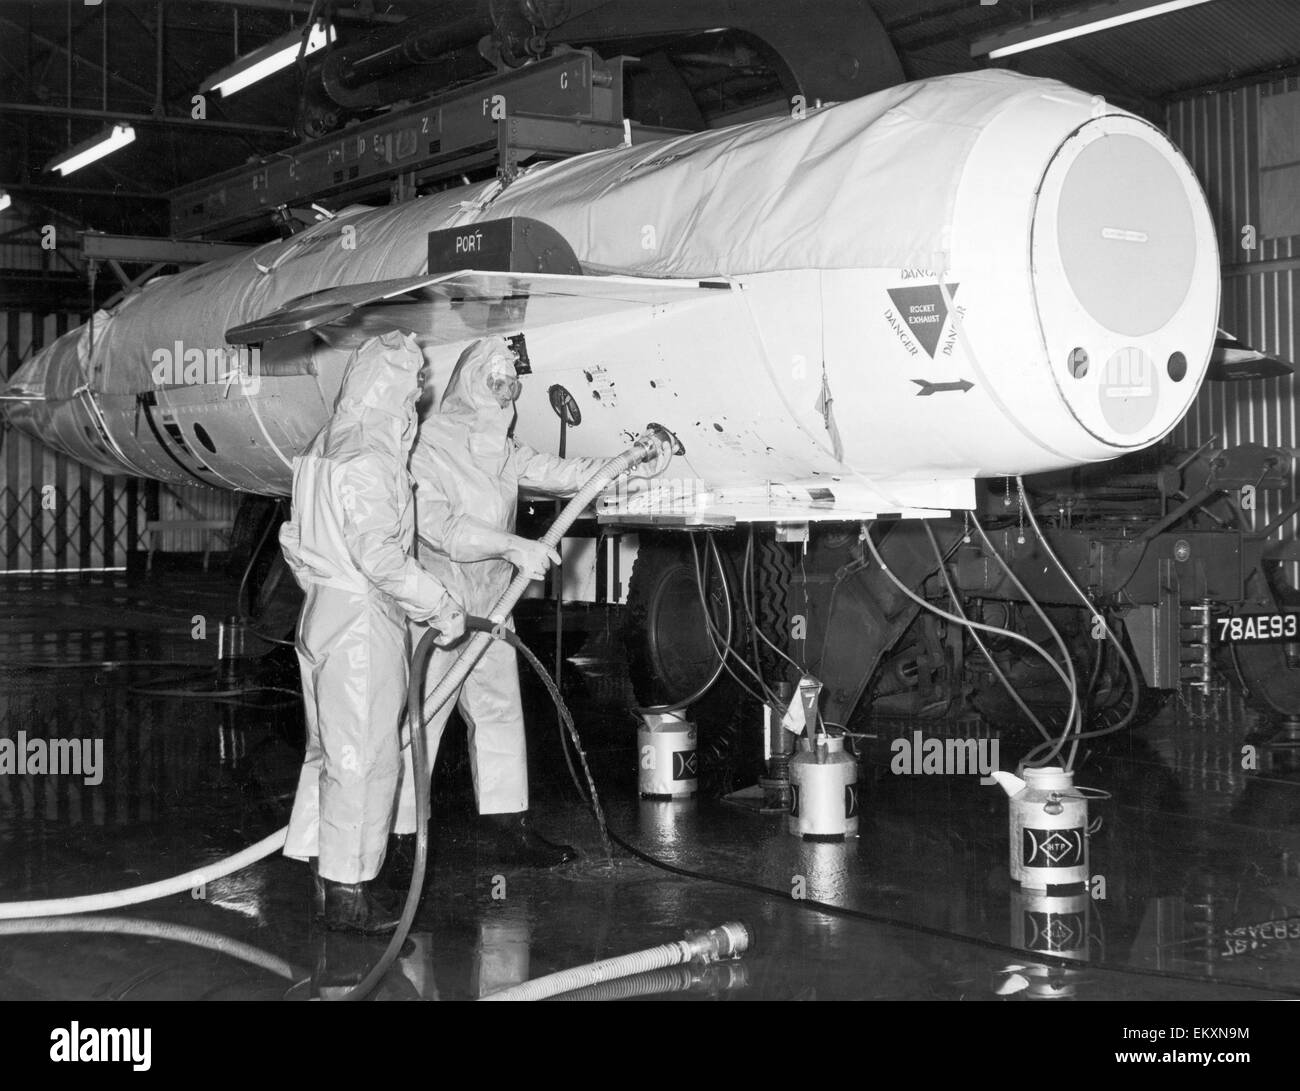 Die Avro Blue Steel eine britische luftgestützte, raketengetriebene Abstandswaffe Atomrakete, gebaut um die V-Bomber-Kraft zu wappnen. Es war die britische nukleare Abschreckung Primärwaffe der 1960er Jahre. Unser Bild zeigt RAF Bodenpersonal Betanken der Rakete mit Wasserstoff Stockfoto